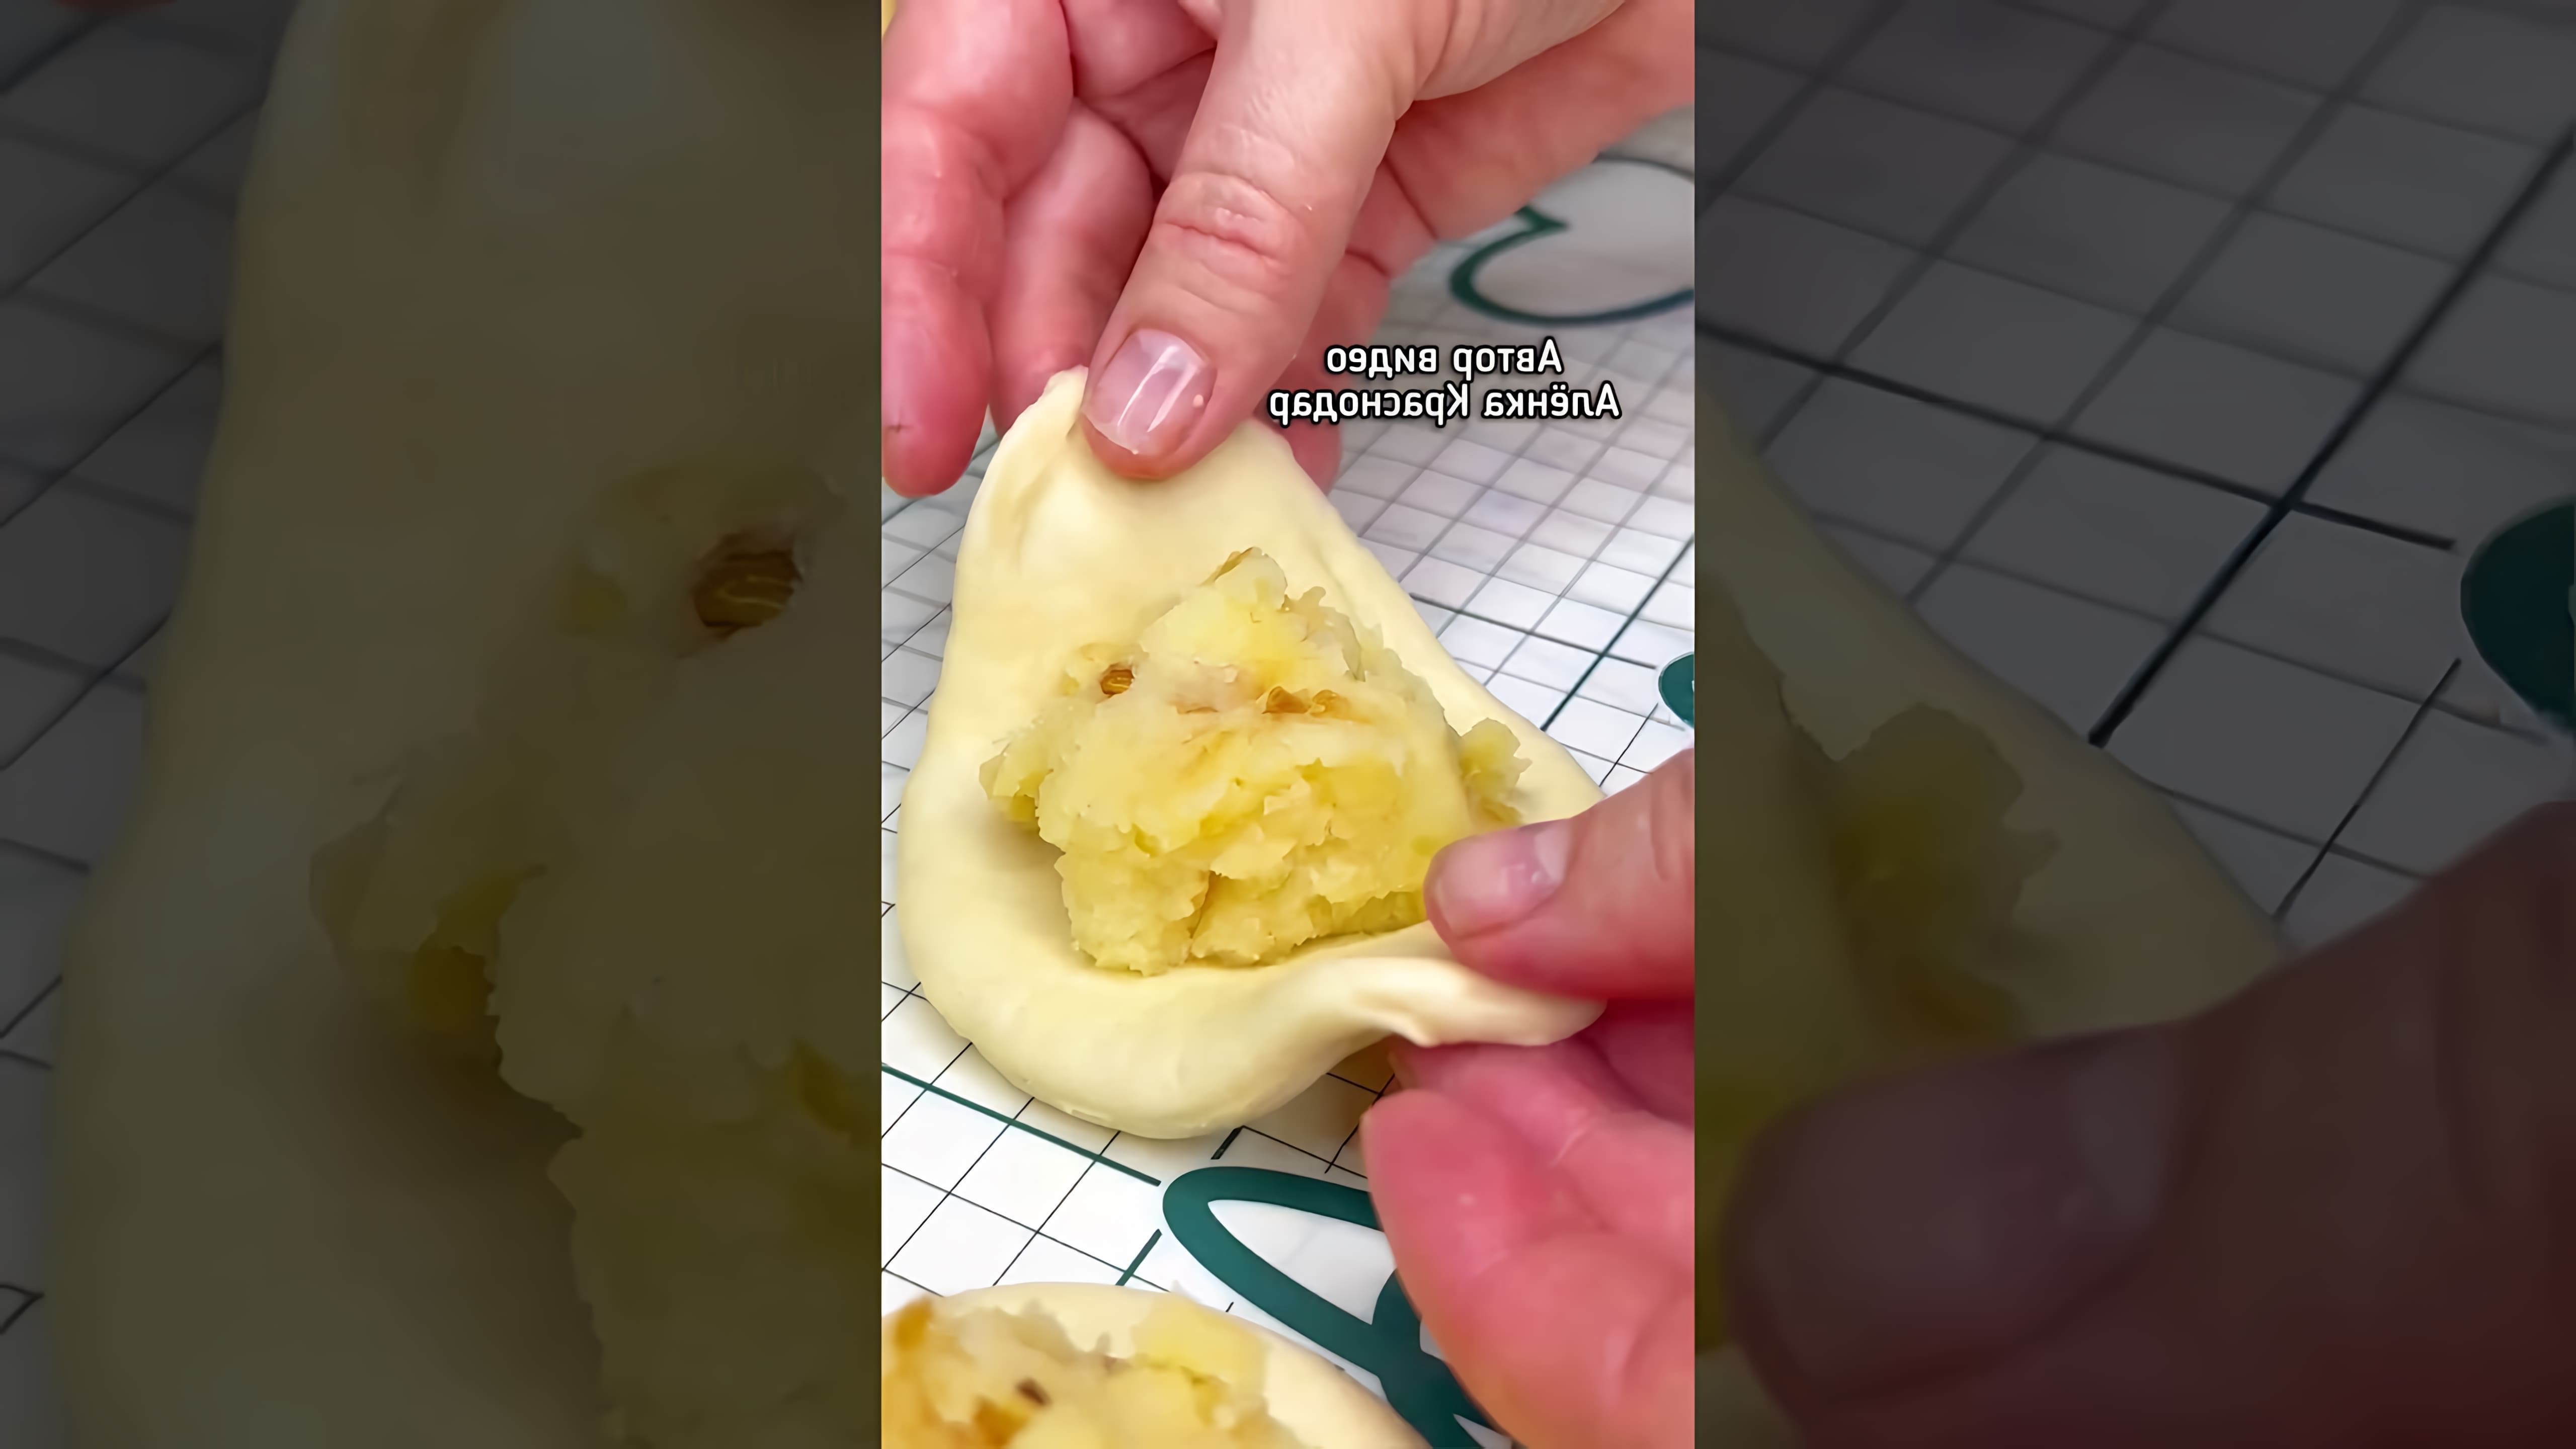 В этом видео демонстрируется рецепт приготовления пирожков с картошкой без дрожжей